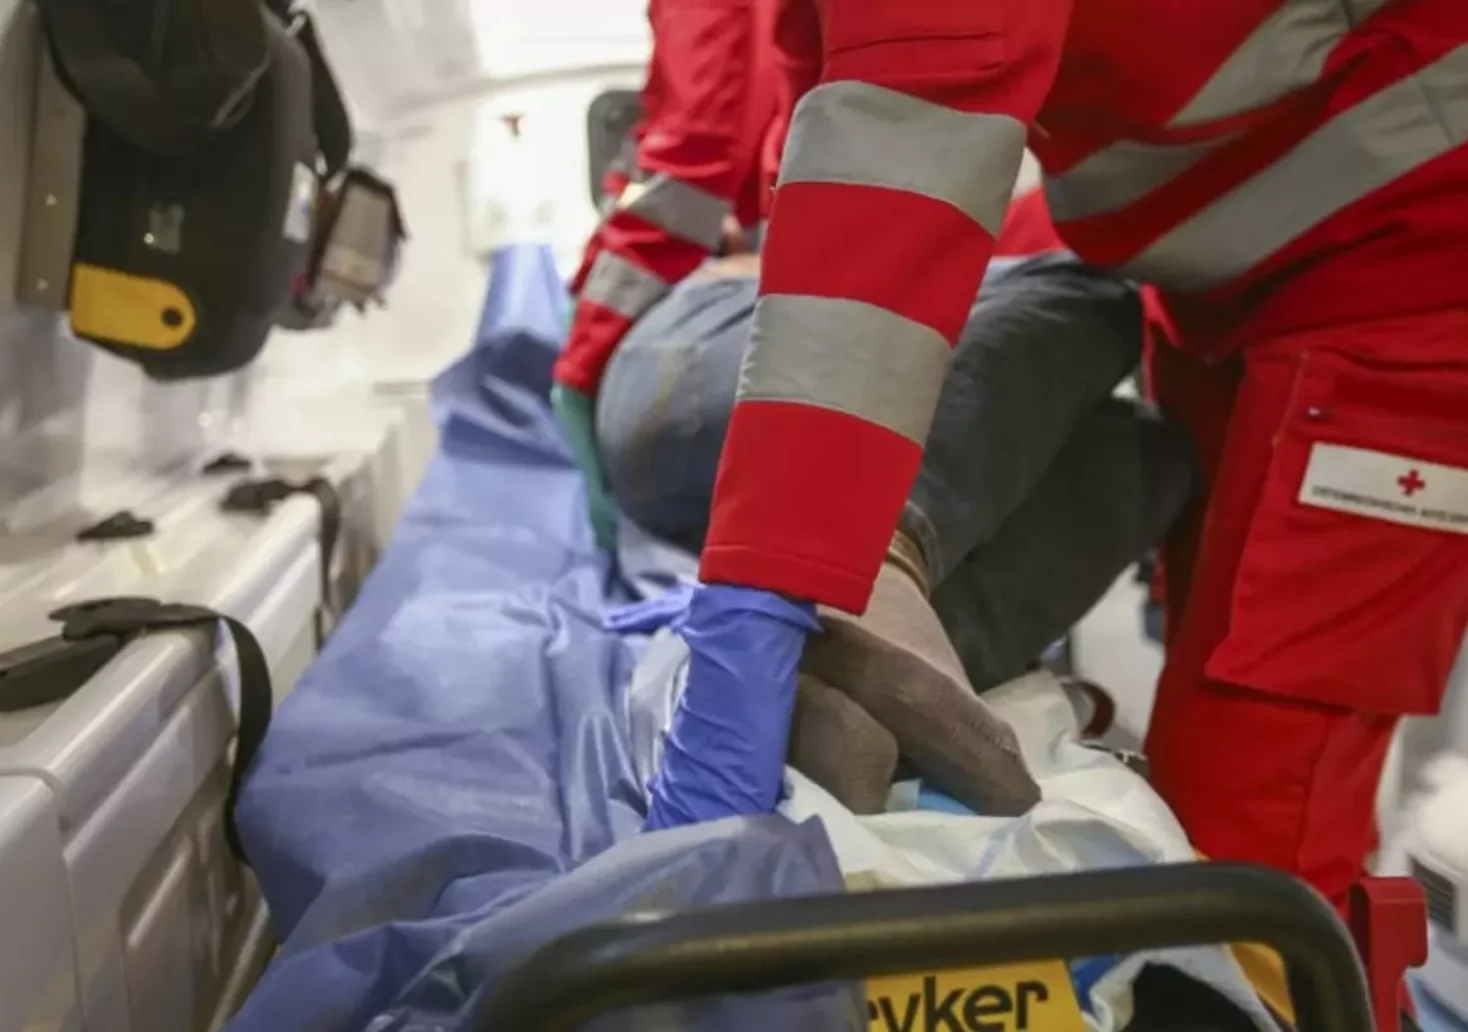 Ein Bild auf 5min.at zeigt einen Rettungssanitäter, der eine Verletzte in einem Rettungswagen verarztet. Die Frau befindet sich in einer stabilen Seitenlage.